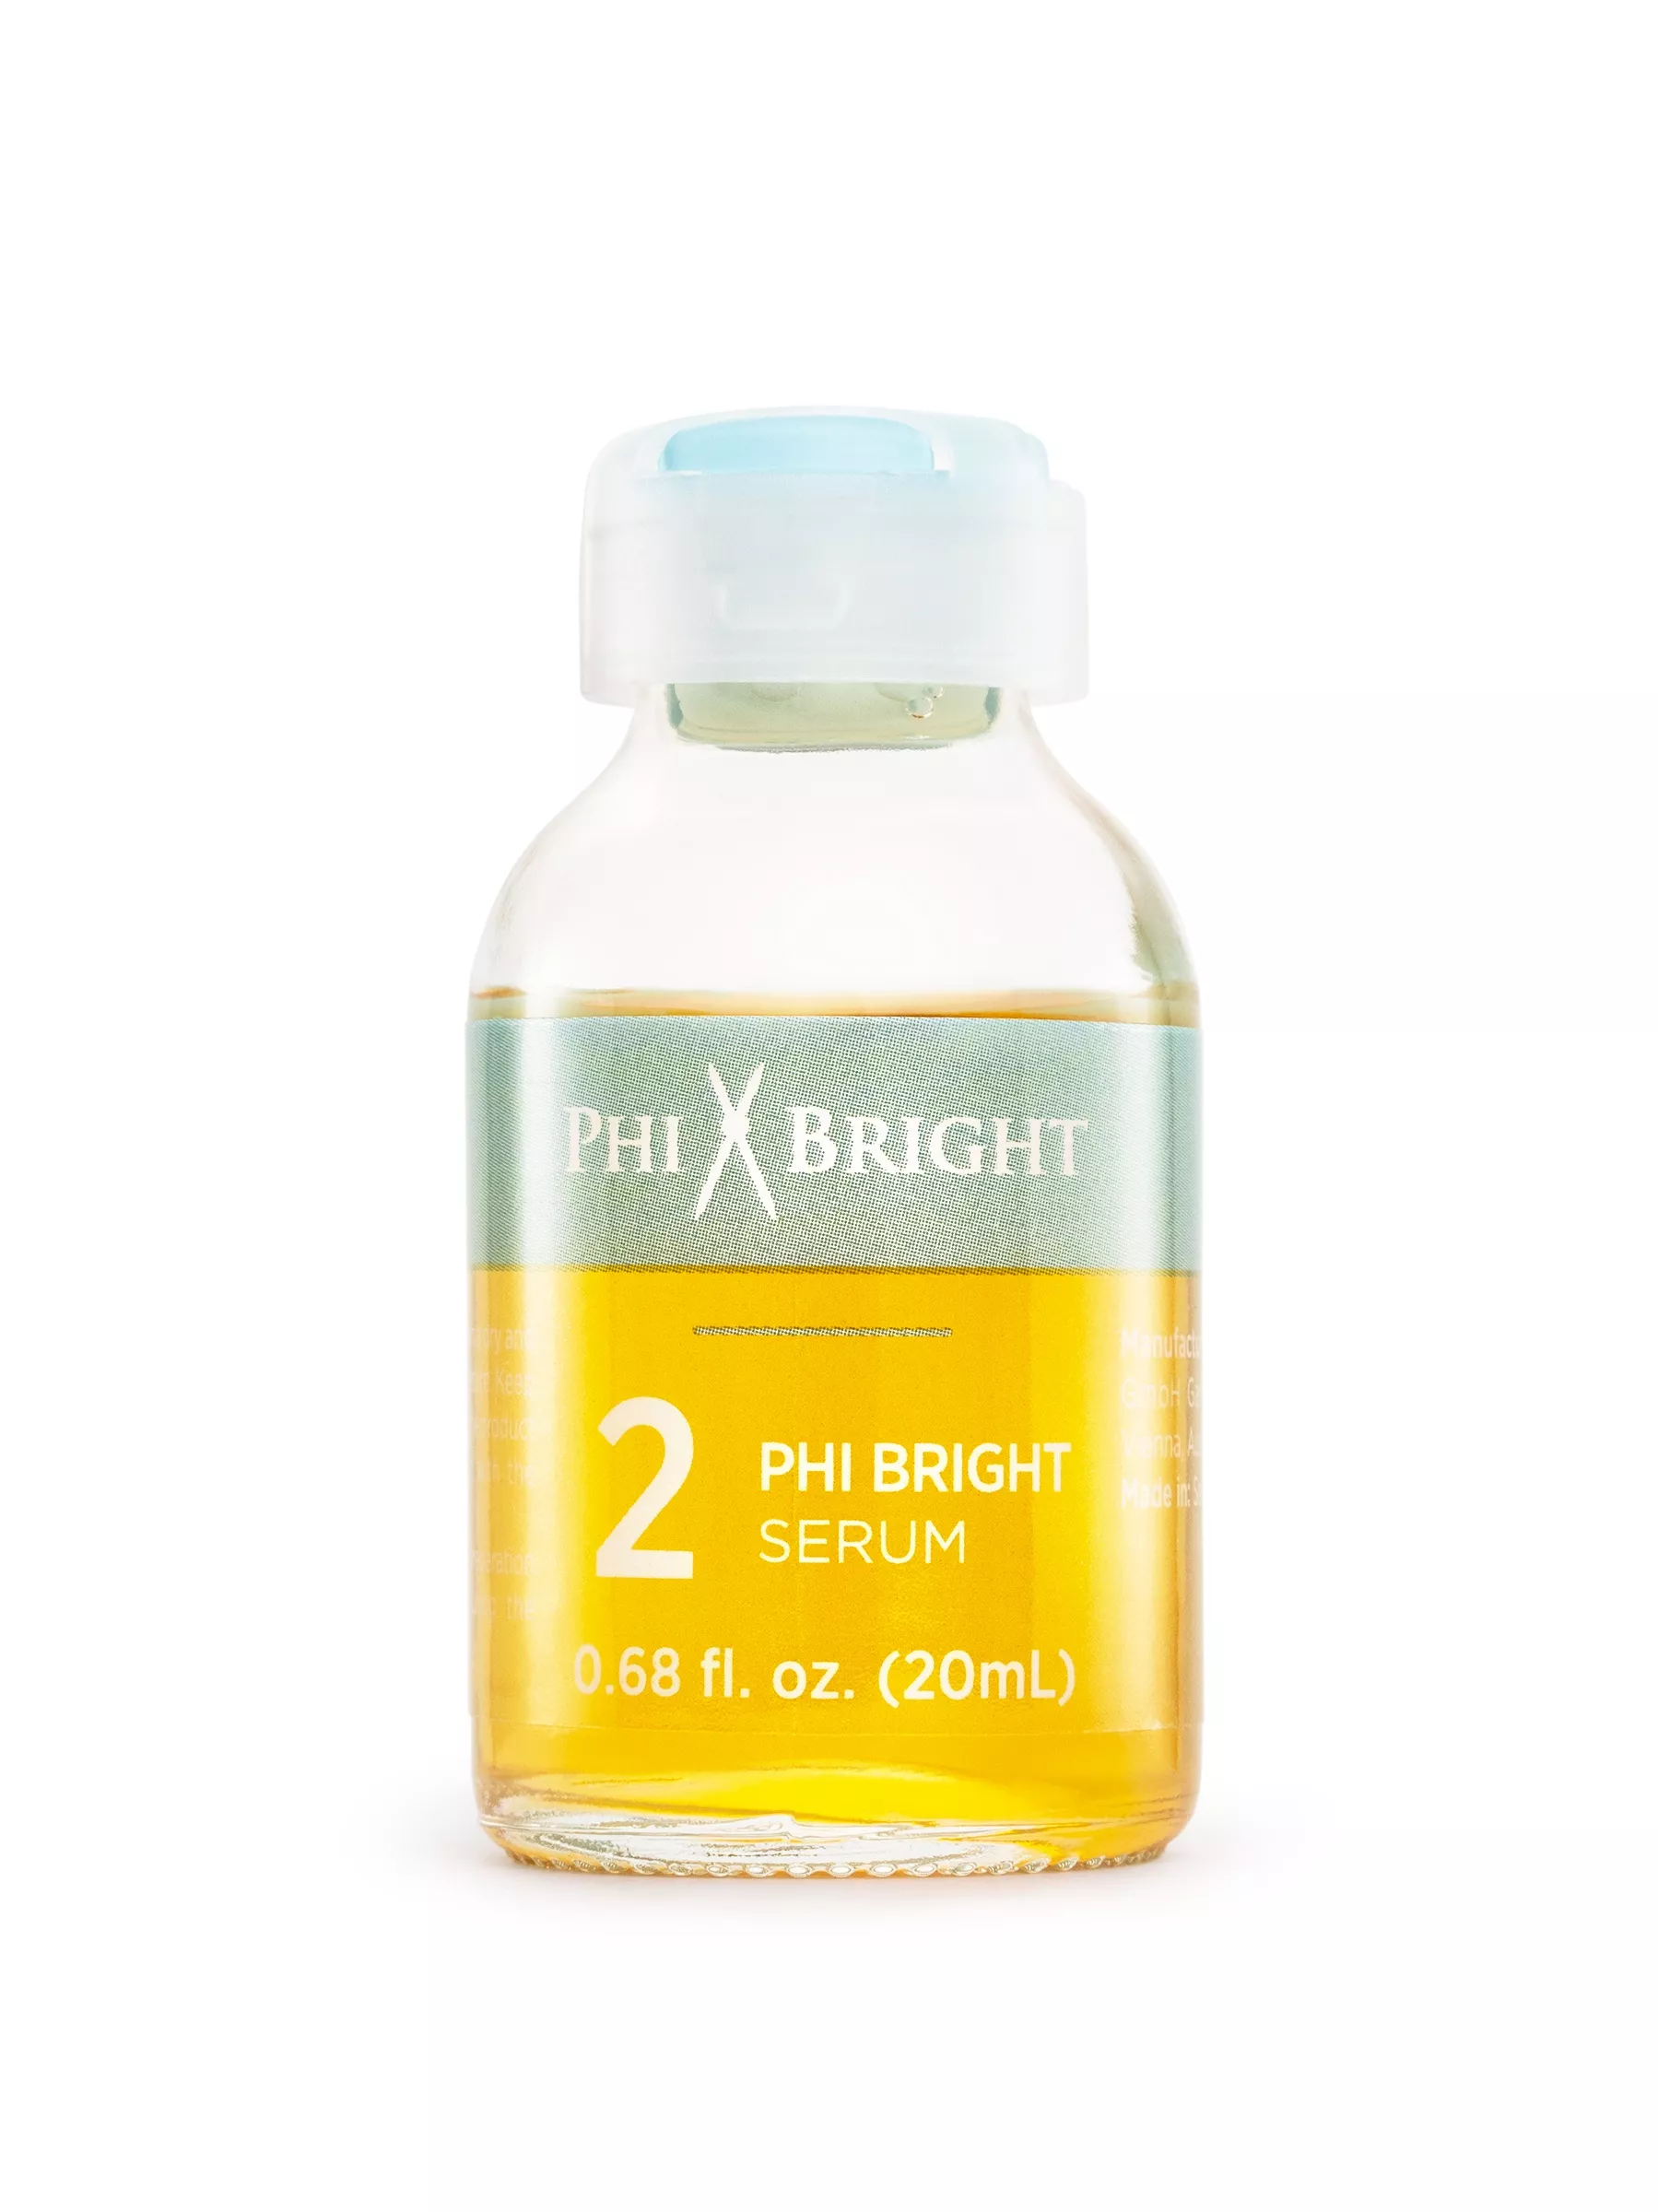 PhiBright Serum 2 - 20ml